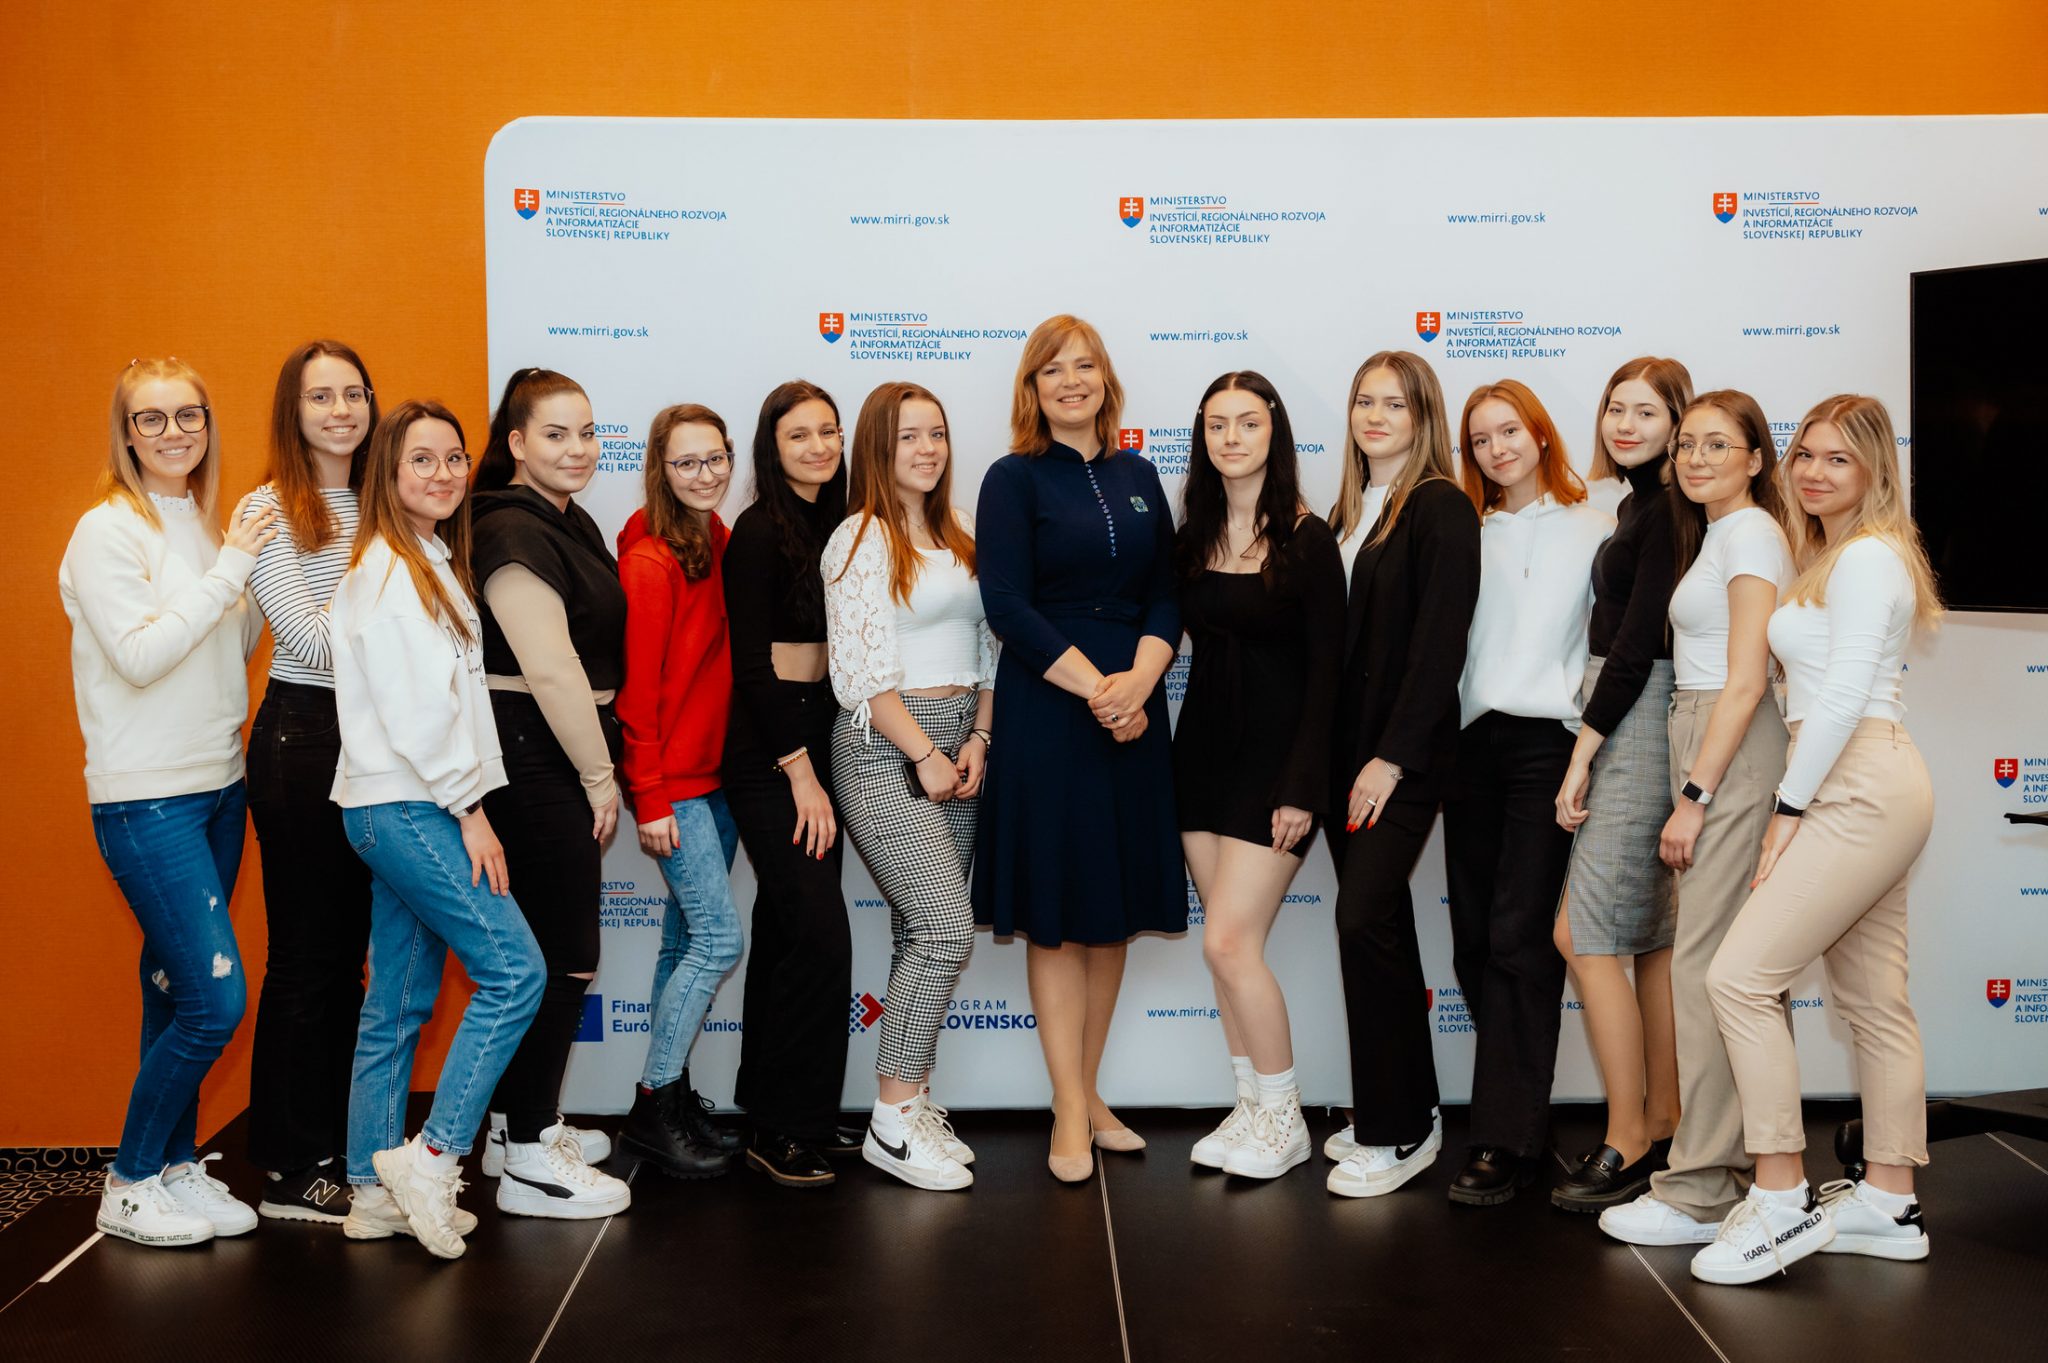 Vicepremiérka Remišová: Slovensko potrebuje viac IT špecialistiek – ministerstvo informatizácie podporuje aktivity na prilákanie dievčat a žien do IT sektora